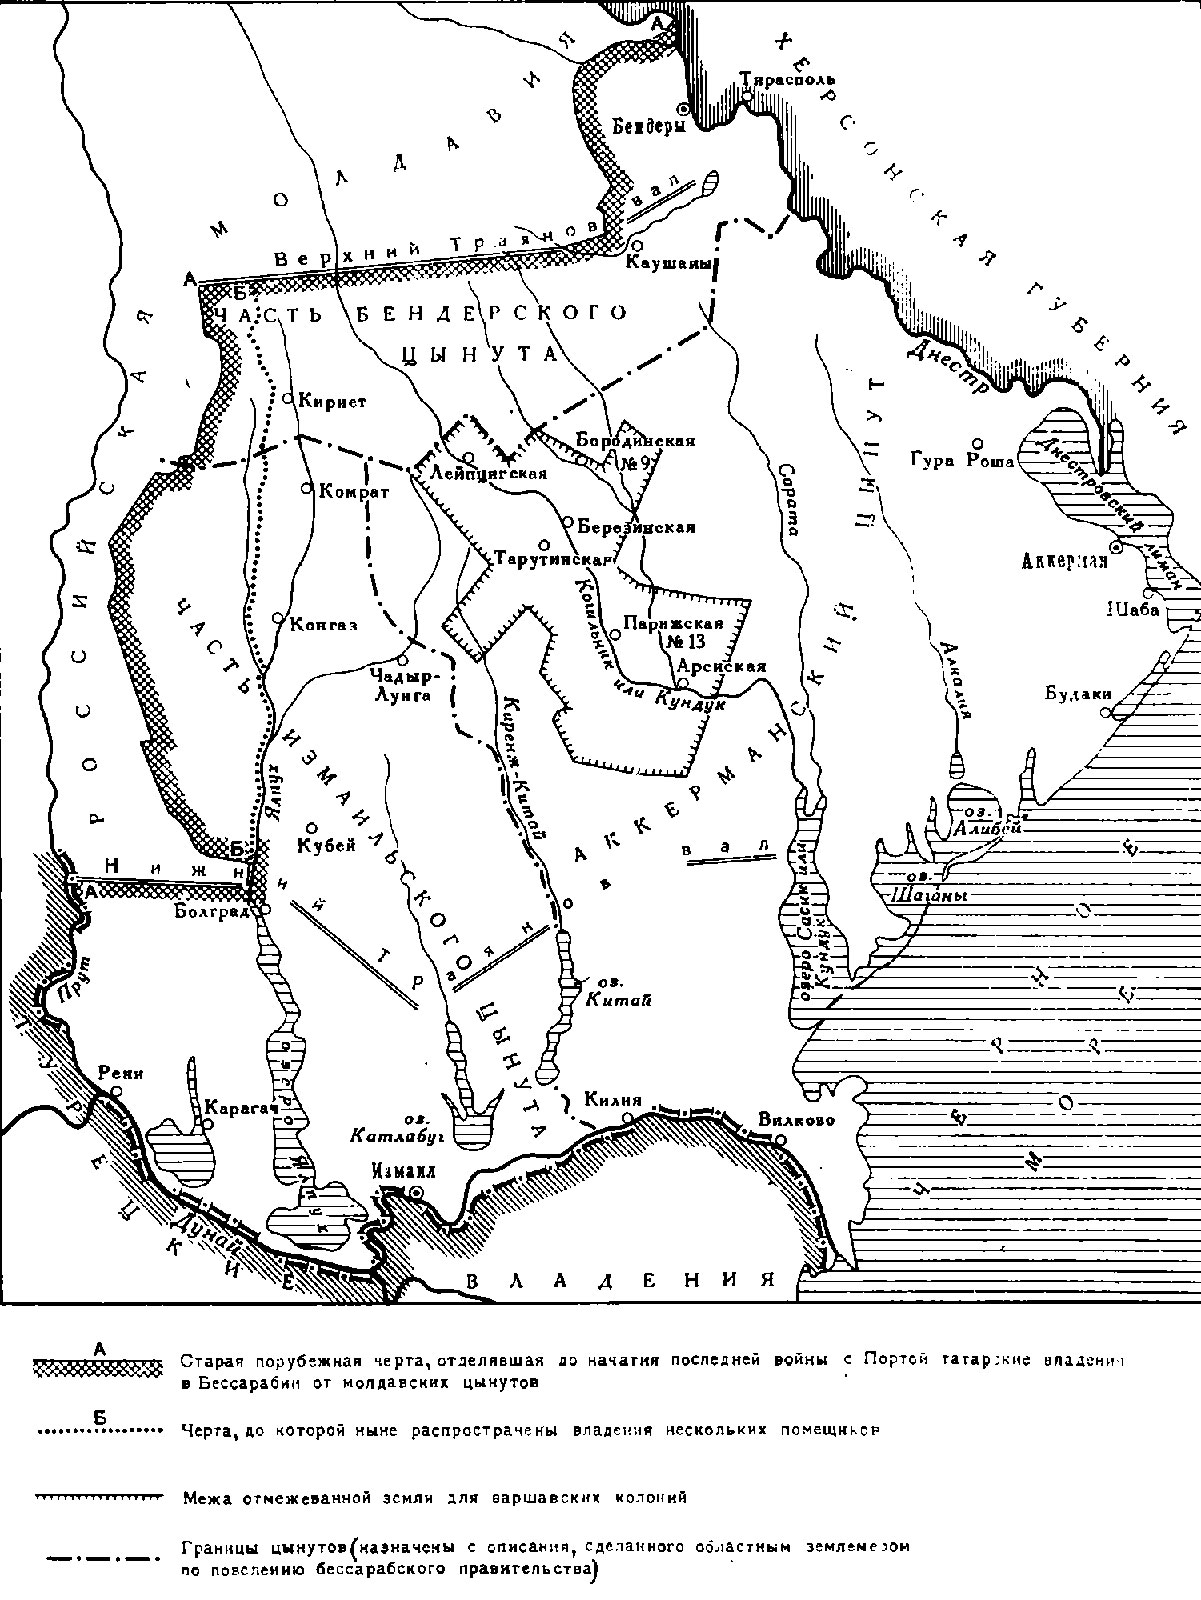 “Карта Бессарабии и Буджака” 1820 г. (схема рукописной карты, составленной С.И. Корниловичем)